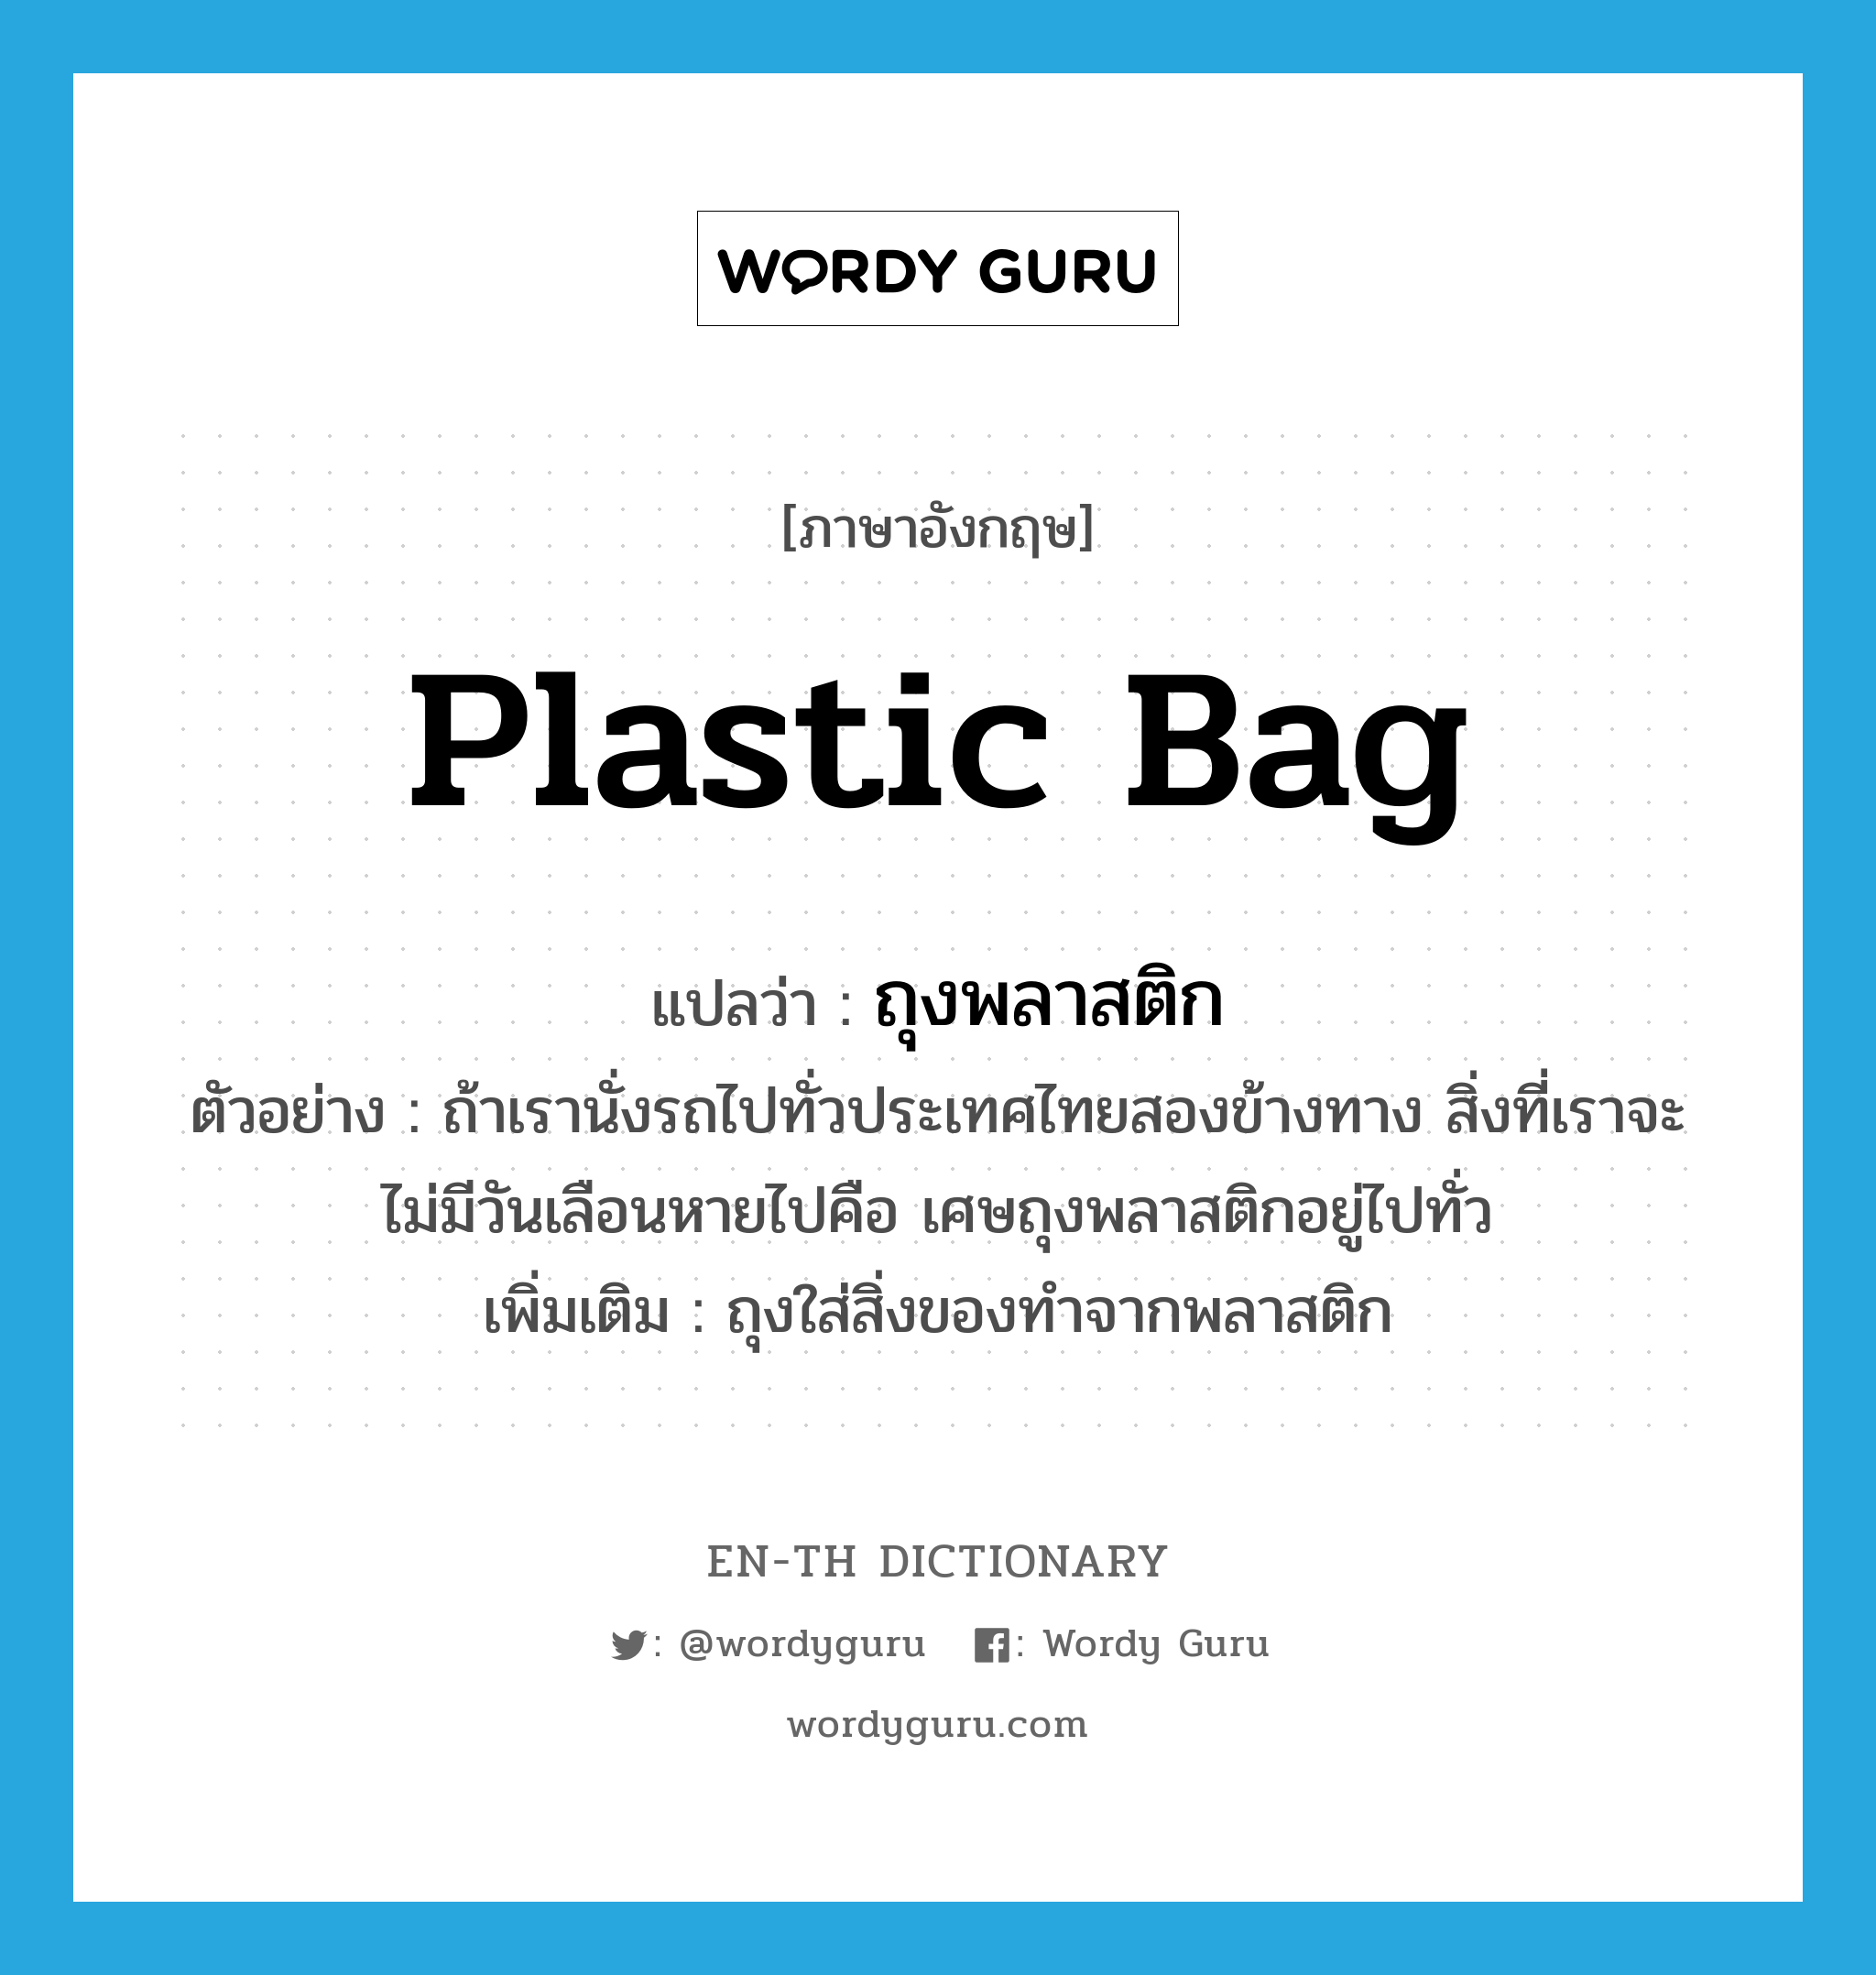 ถุงพลาสติก ภาษาอังกฤษ?, คำศัพท์ภาษาอังกฤษ ถุงพลาสติก แปลว่า plastic bag ประเภท N ตัวอย่าง ถ้าเรานั่งรถไปทั่วประเทศไทยสองข้างทาง สิ่งที่เราจะไม่มีวันเลือนหายไปคือ เศษถุงพลาสติกอยู่ไปทั่ว เพิ่มเติม ถุงใส่สิ่งของทำจากพลาสติก หมวด N